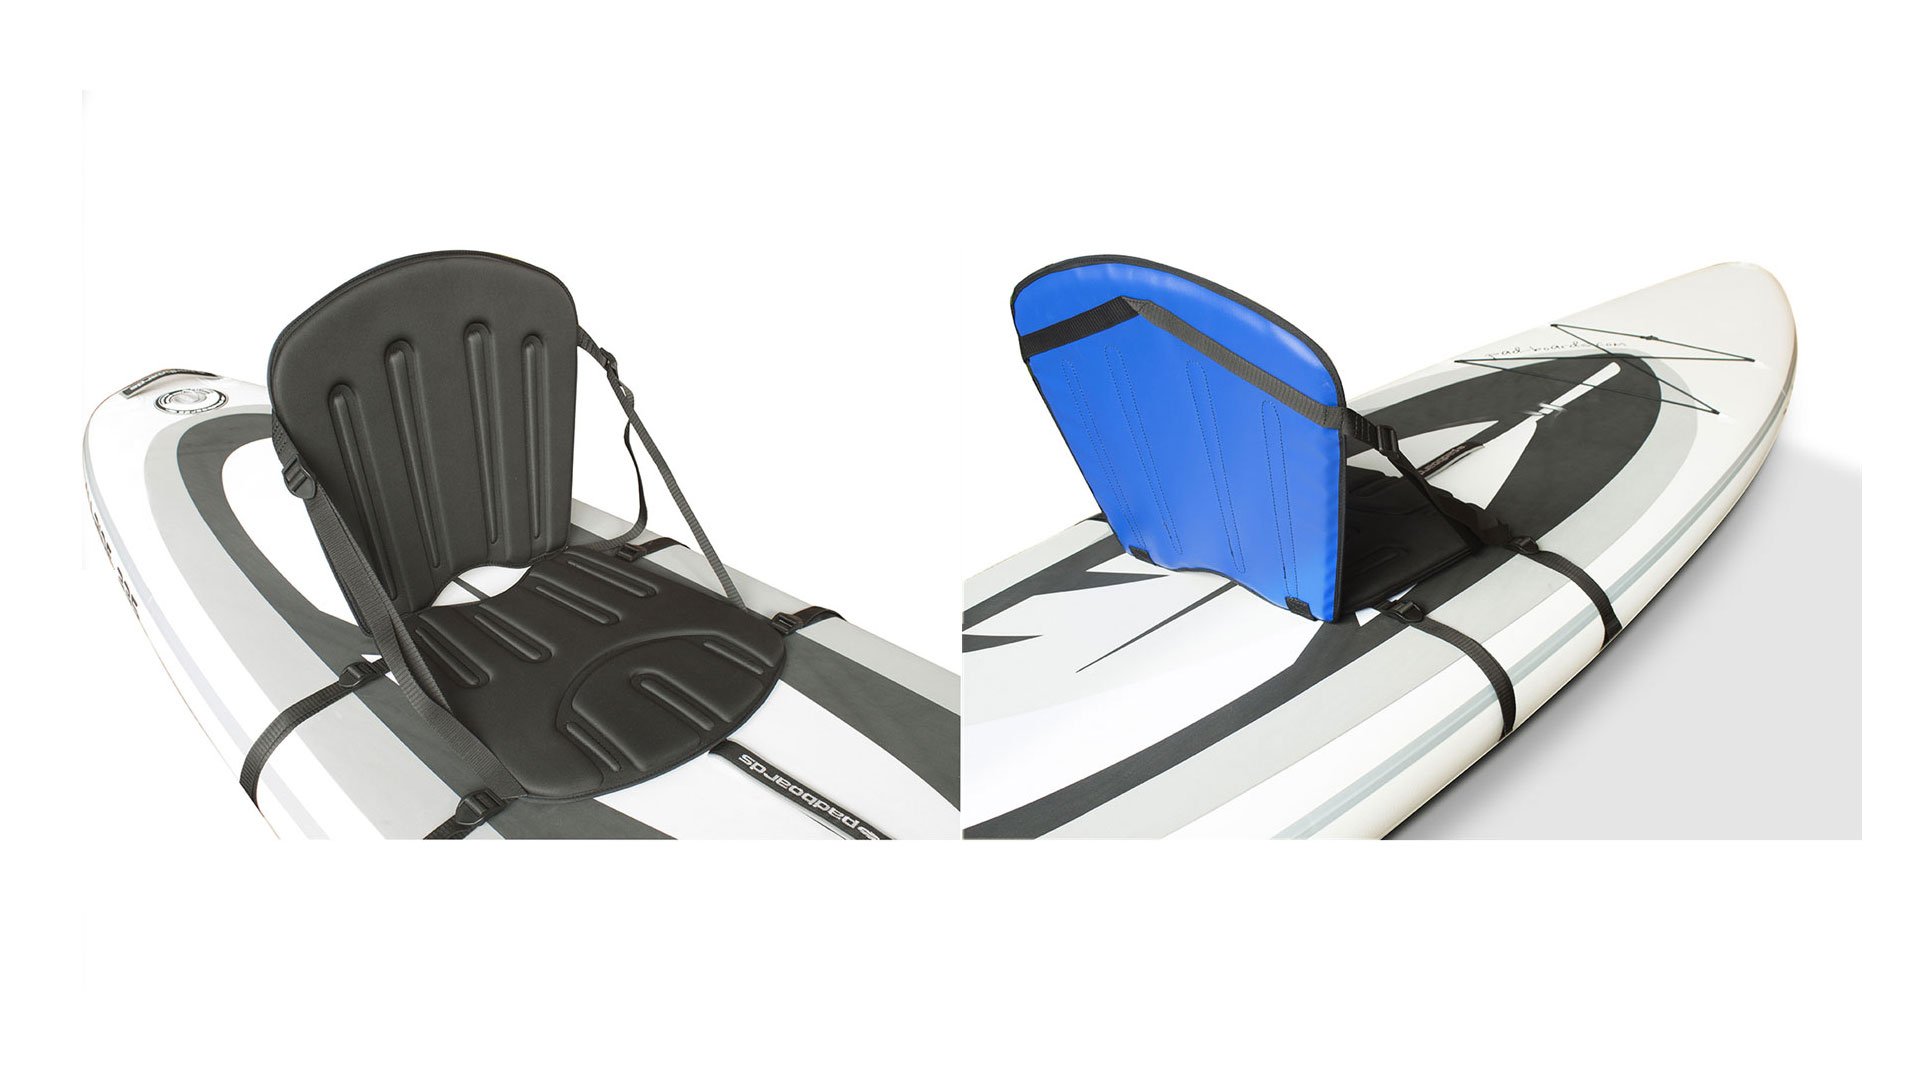 Kajaková sedačka k paddleboardu - pro uchycení bez oček